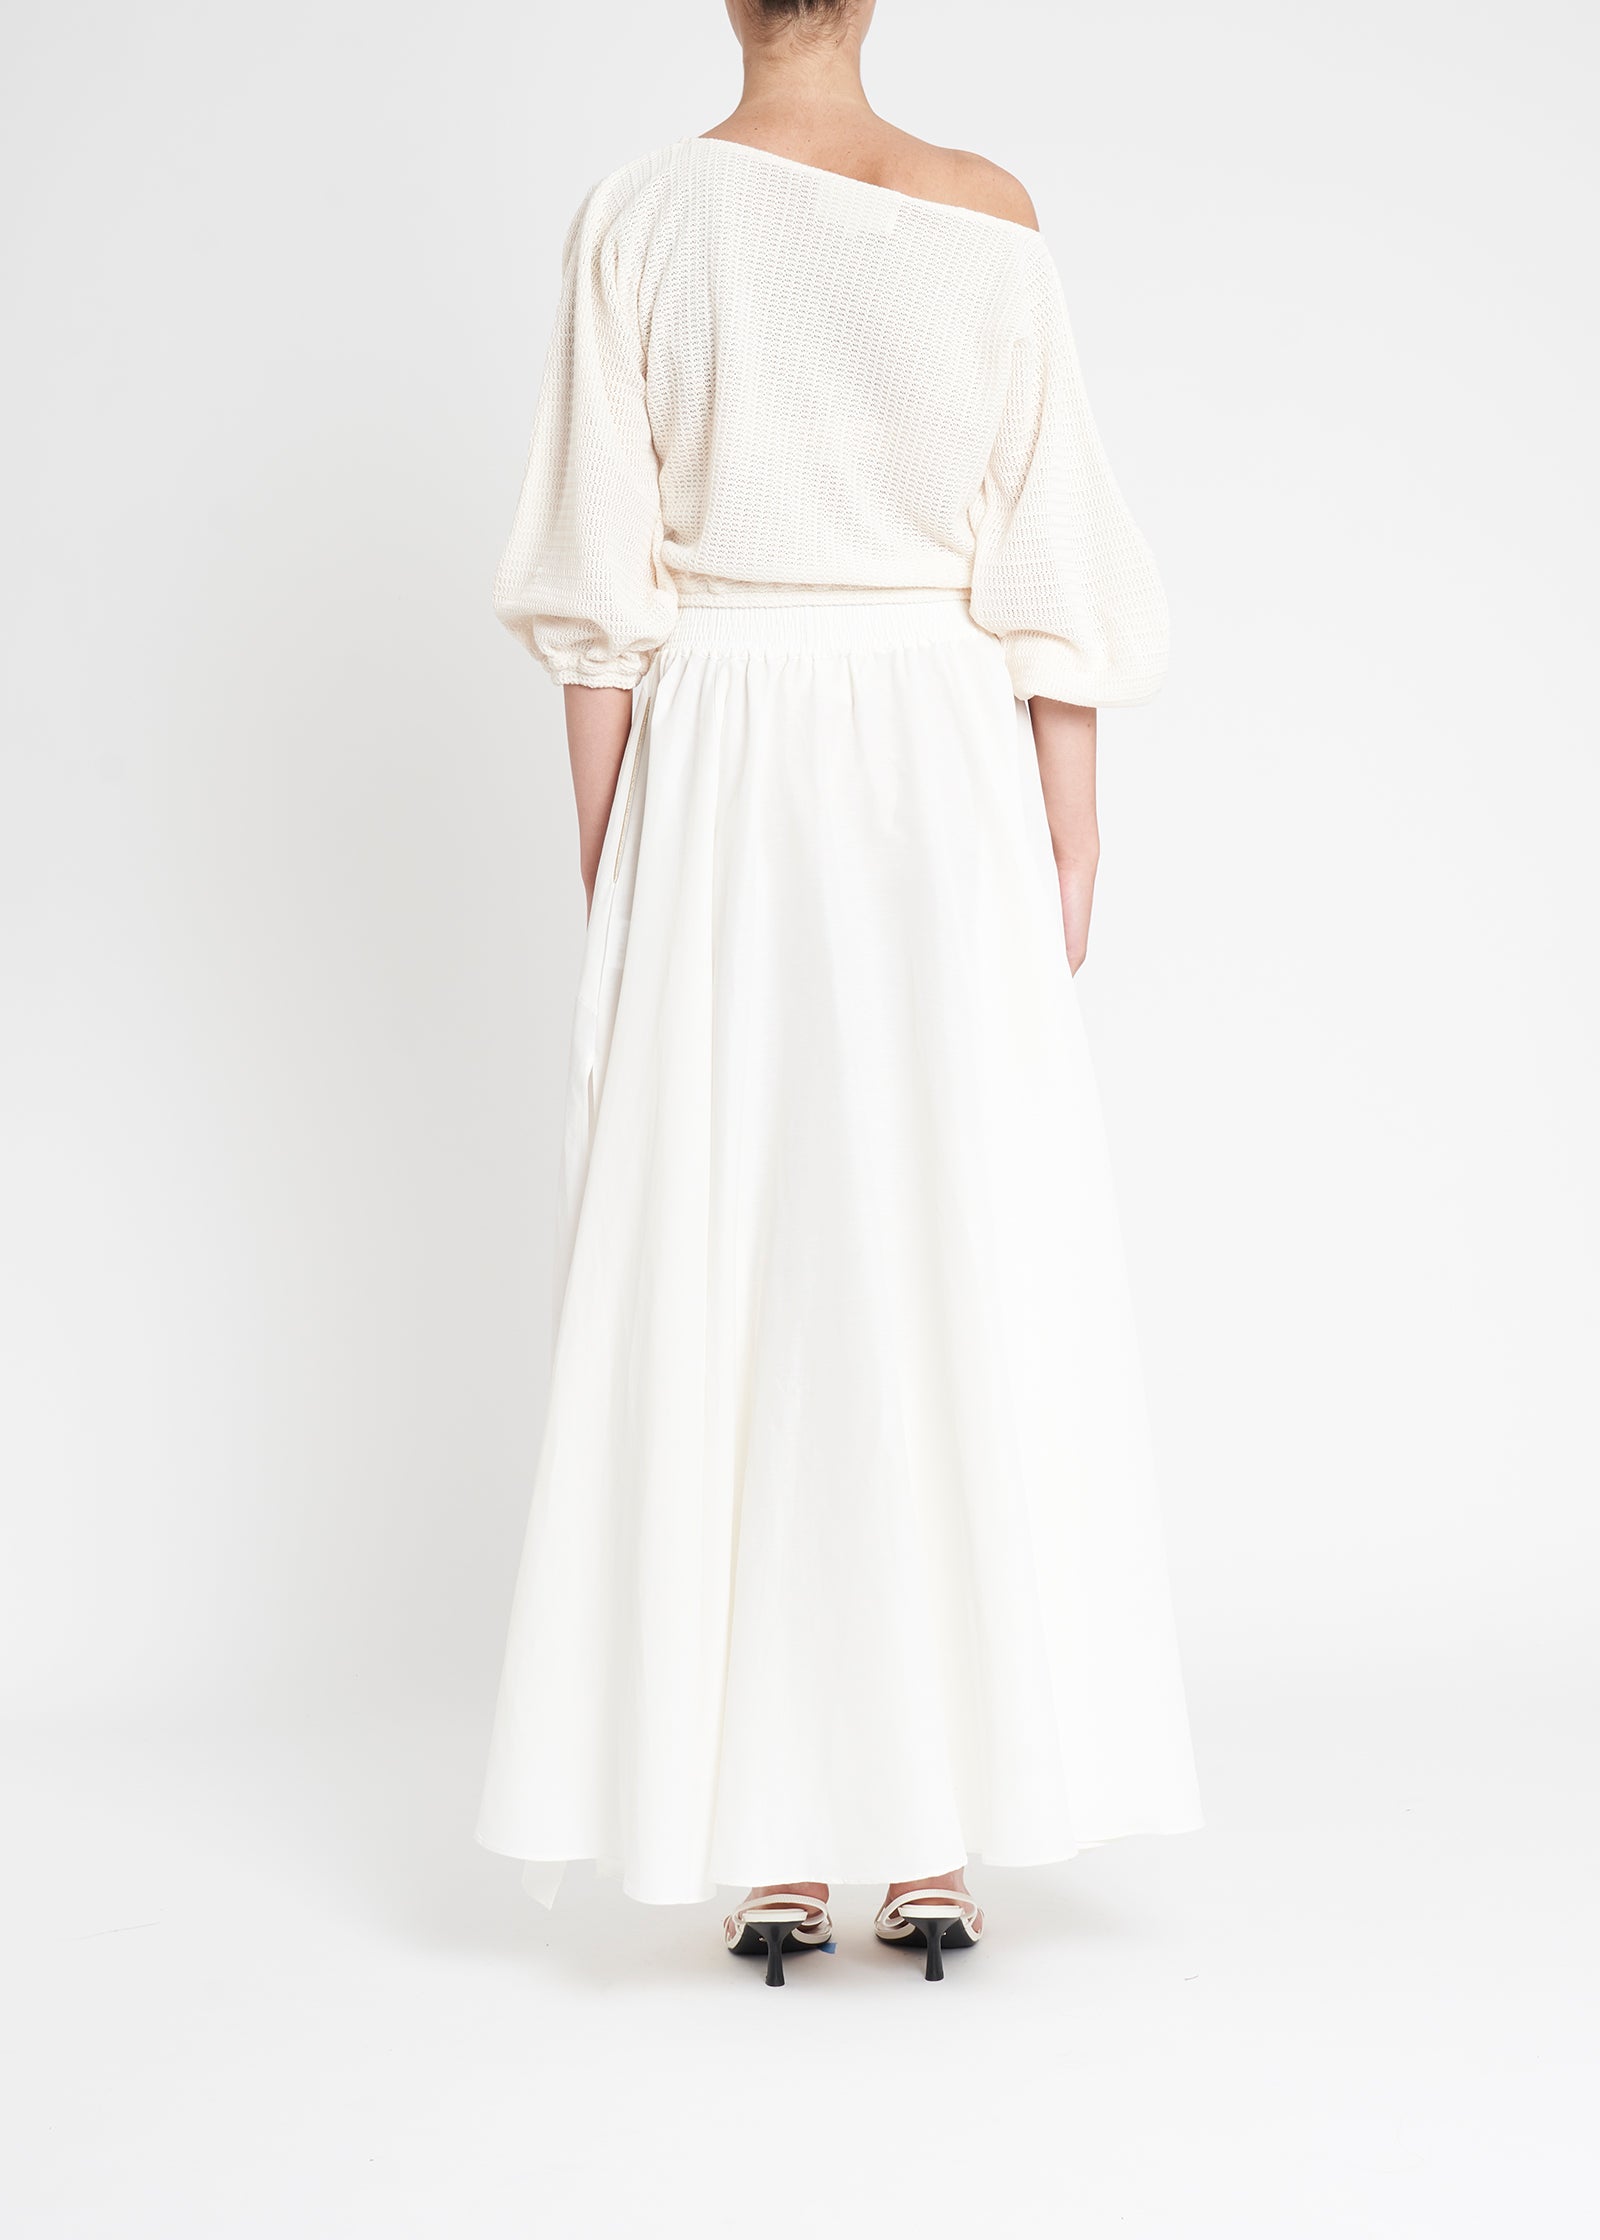 Oleander Maxi Skirt | White Lotus